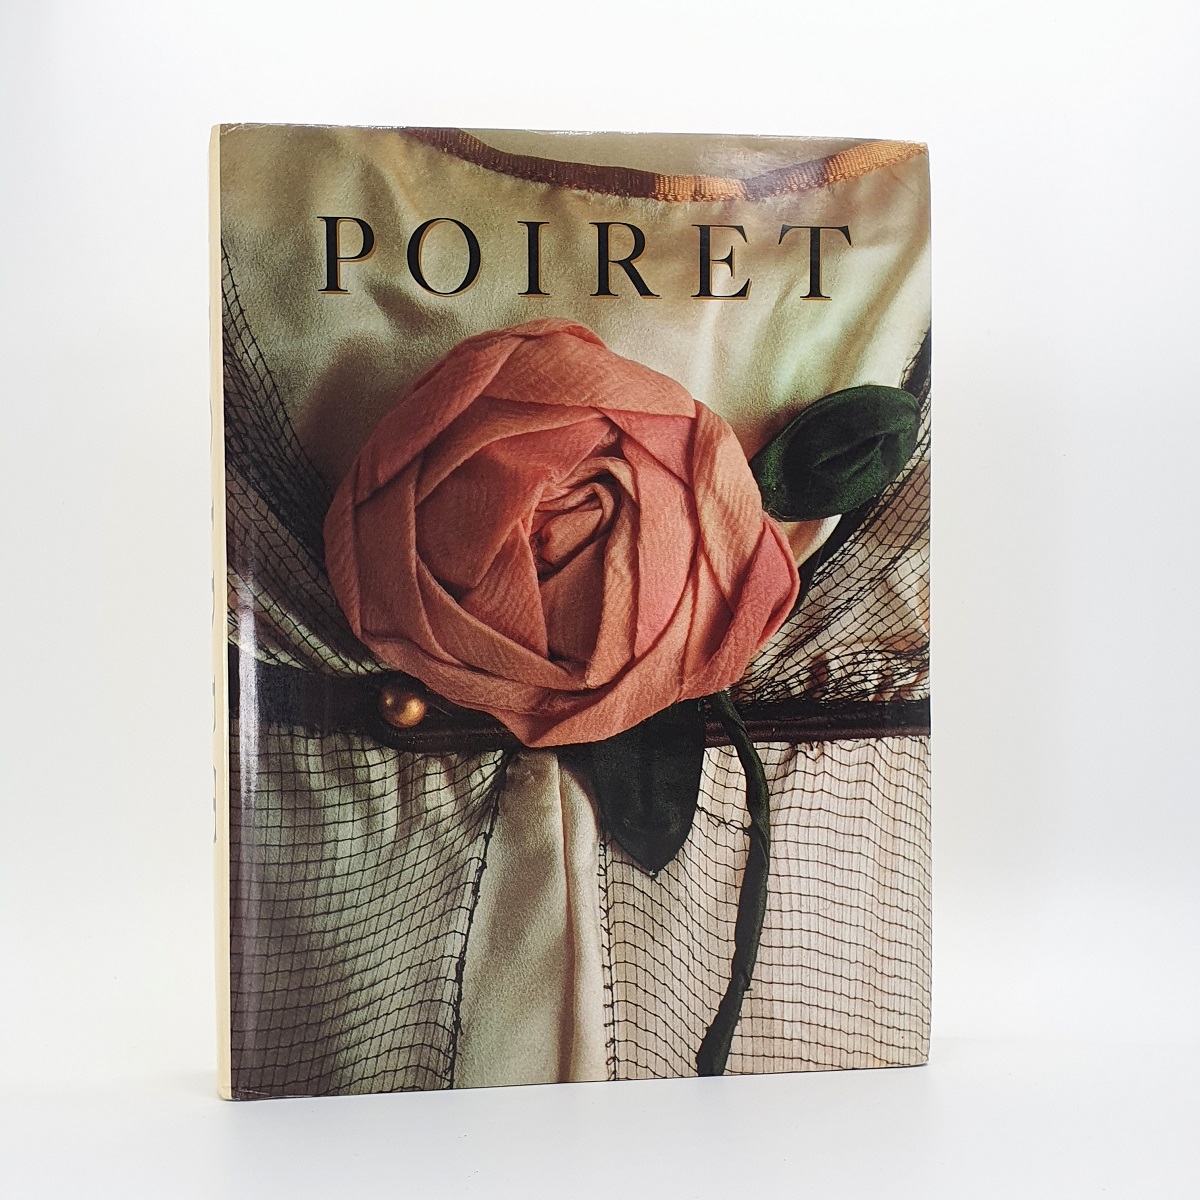 Poiret - Paul Poiret 1879-1944 - Deslandres, Yvonne